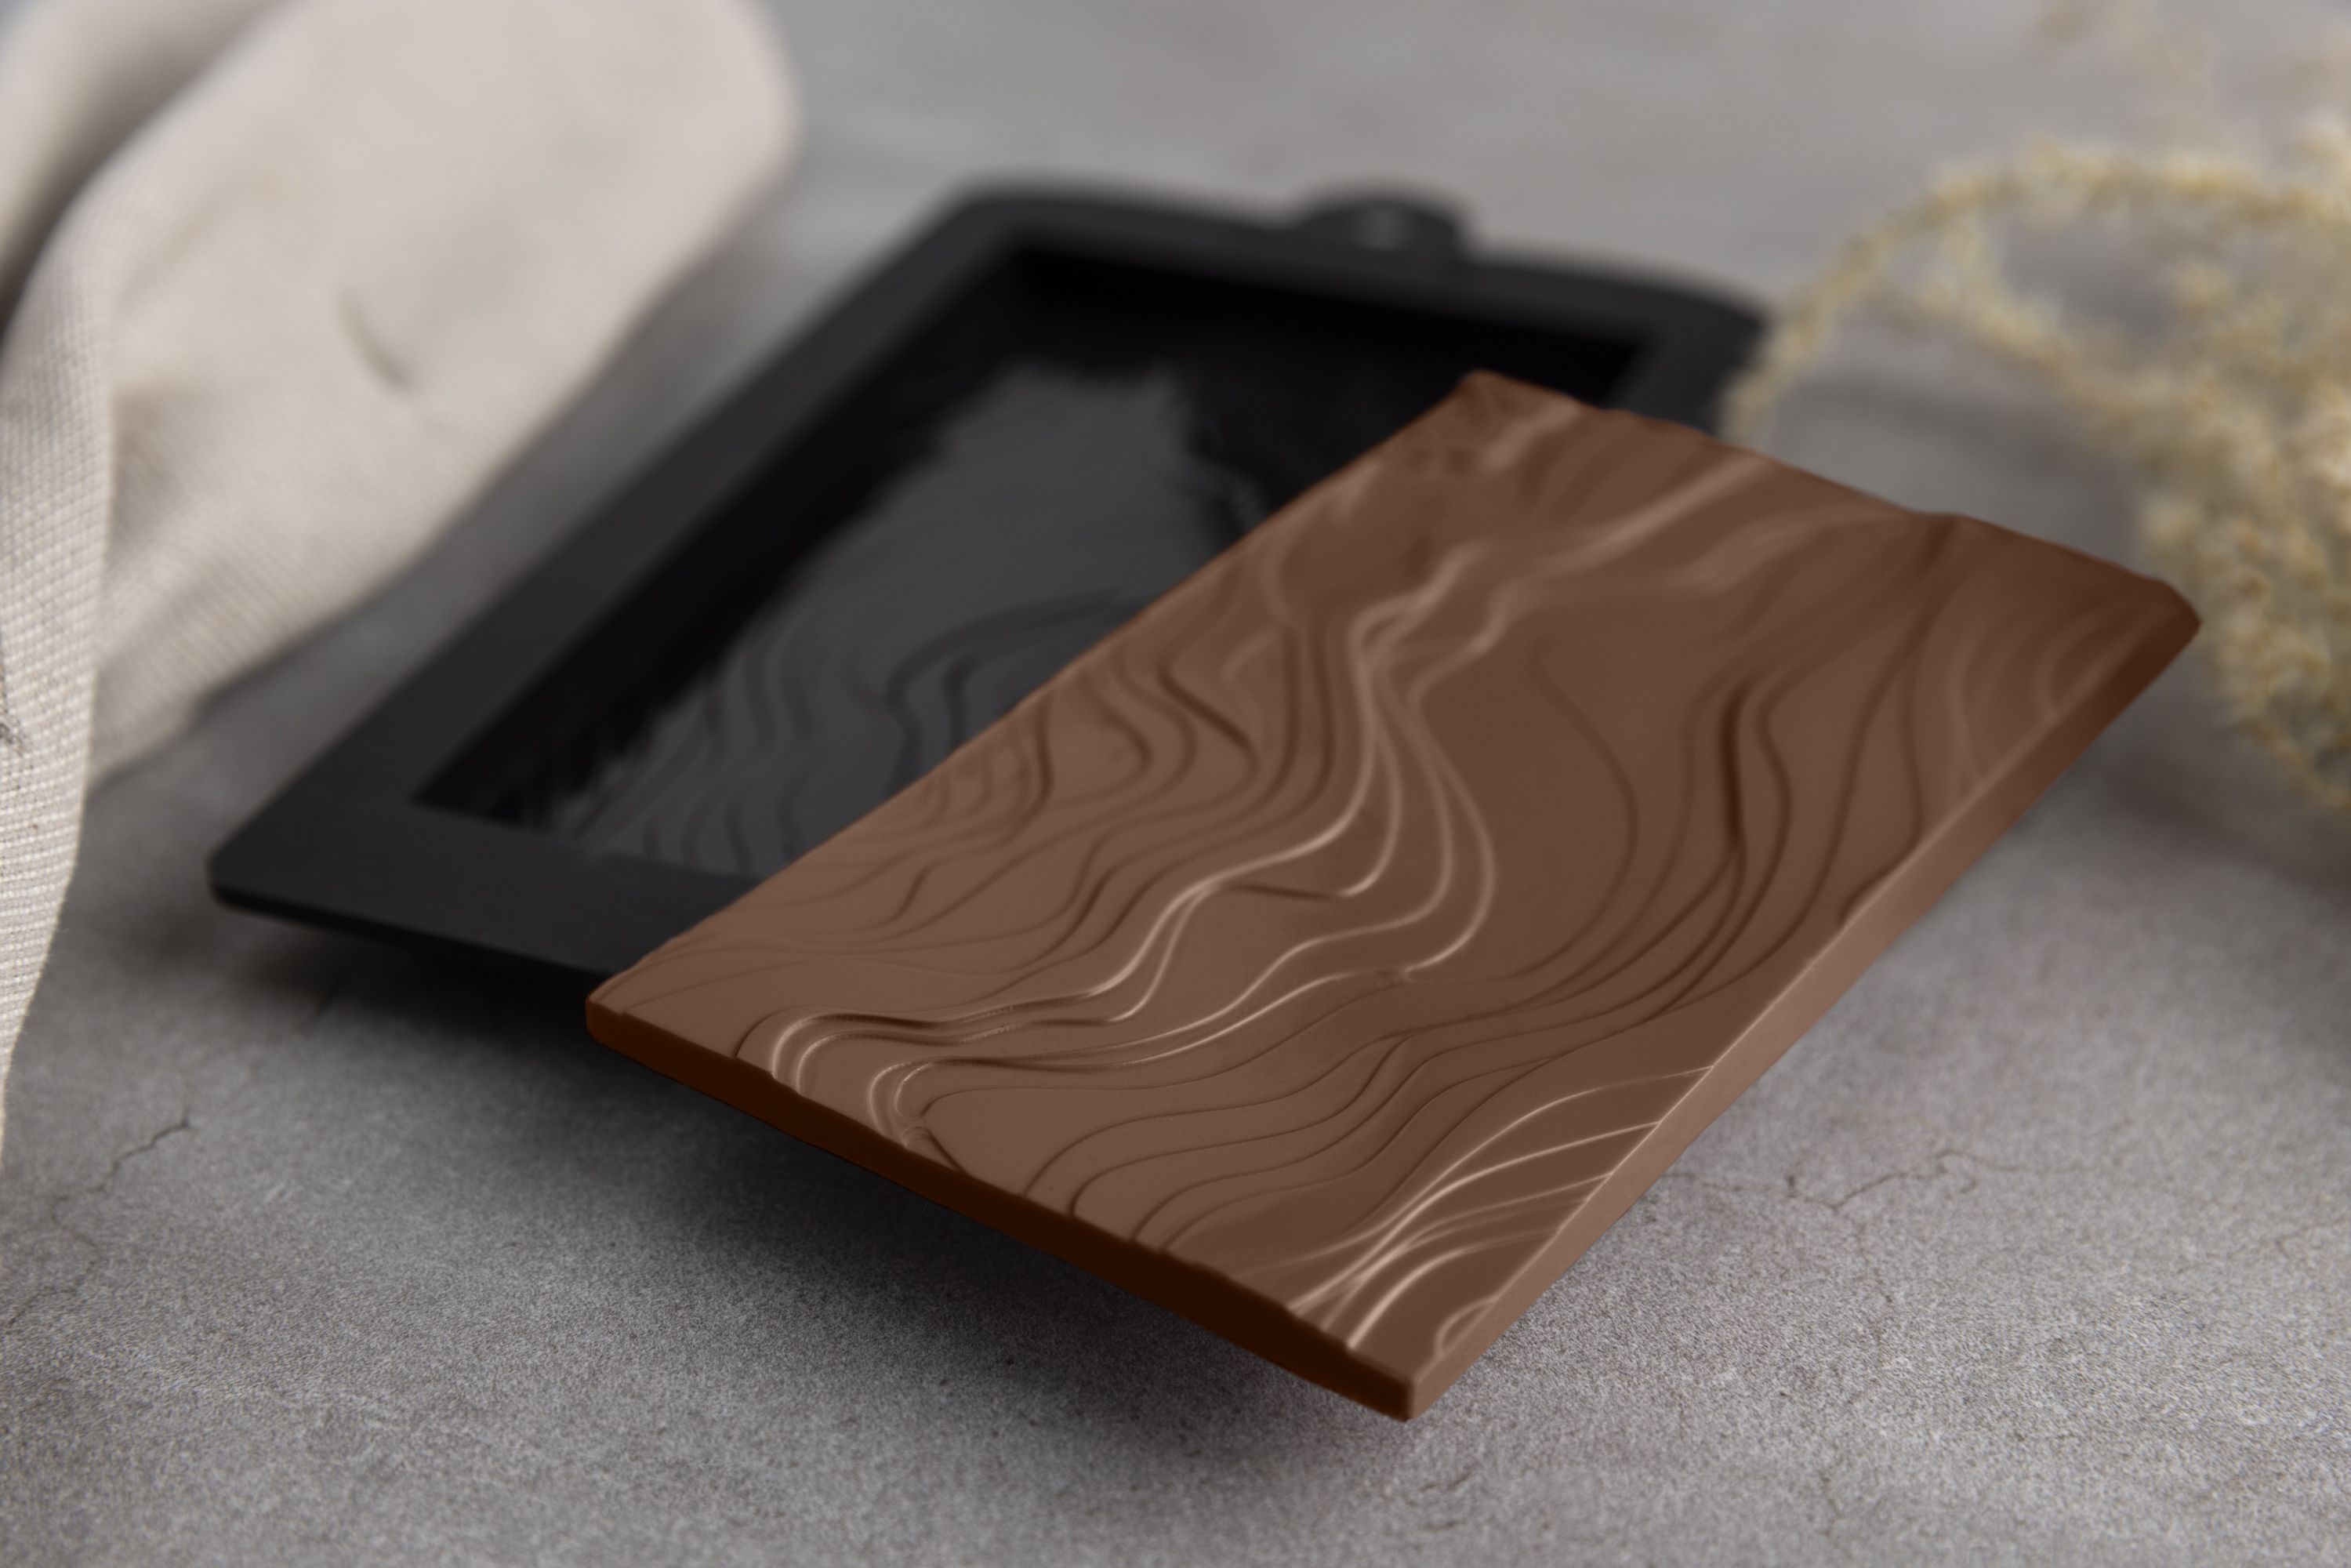 Eine Schokoladenform in Wellenoptik liegt auf einem Tisch